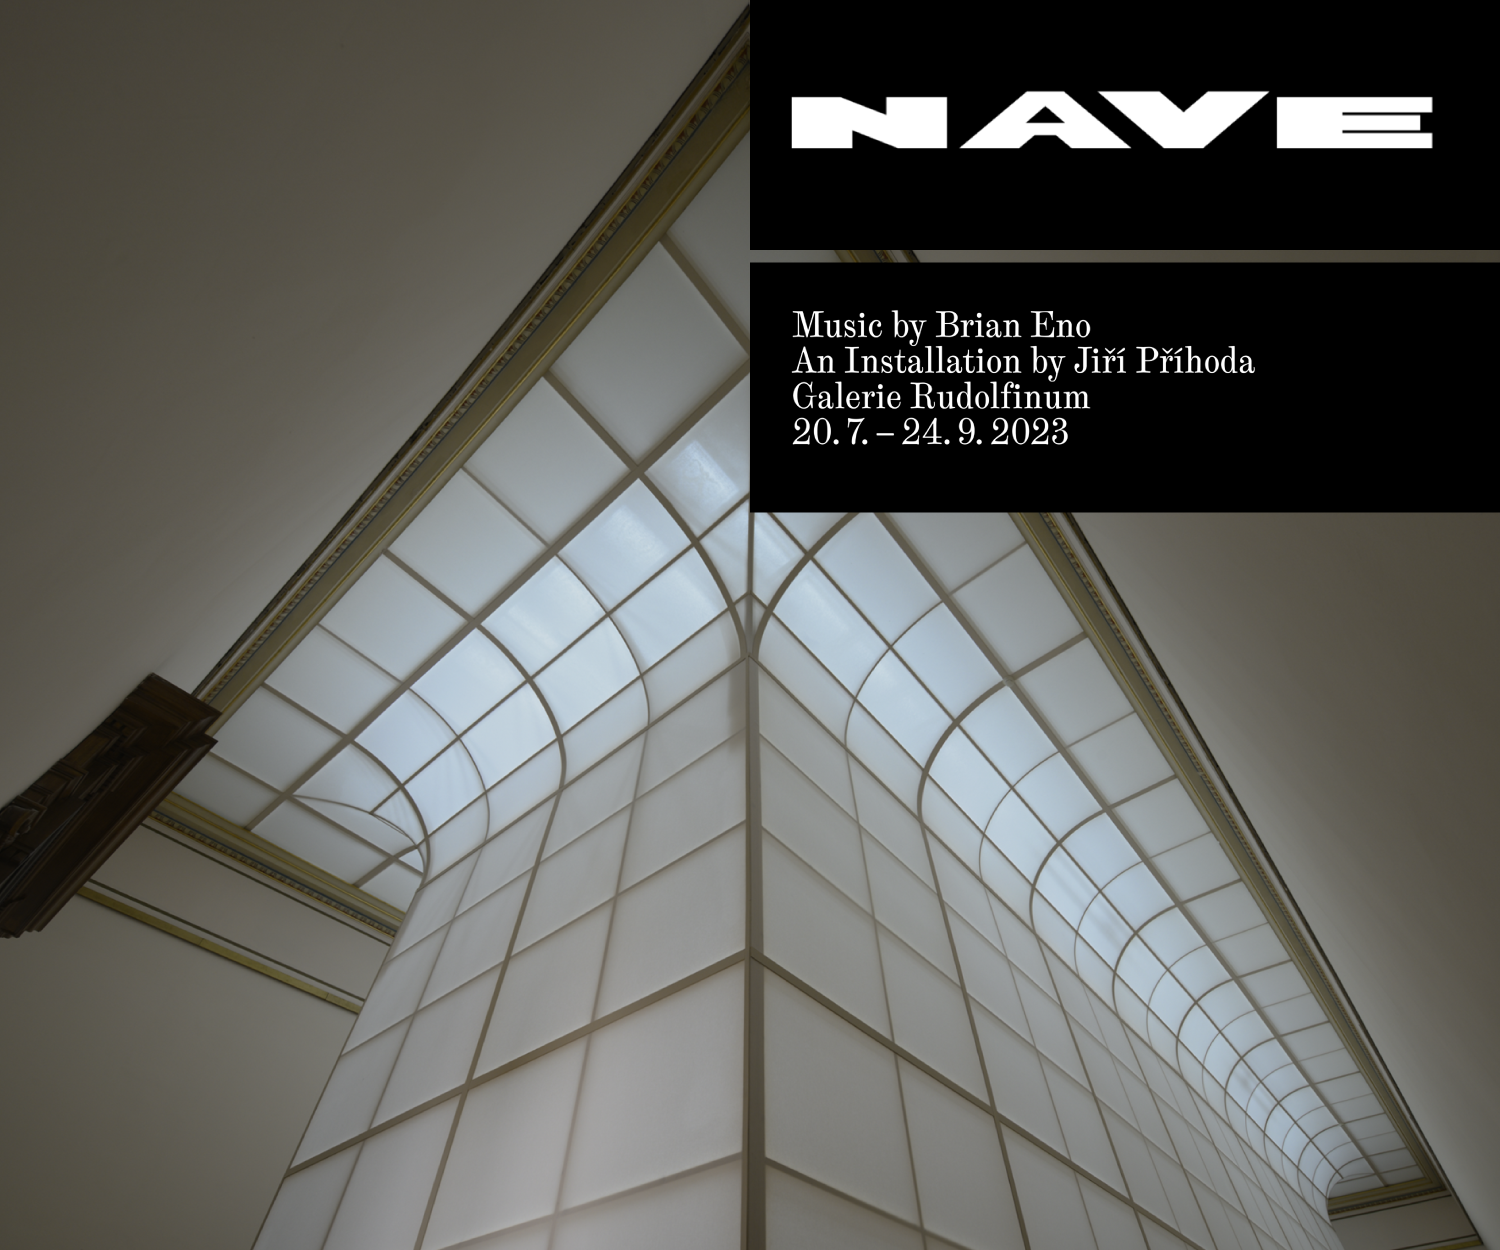 NAVE, Brian Eno, Galerie Rudolfinum 2023